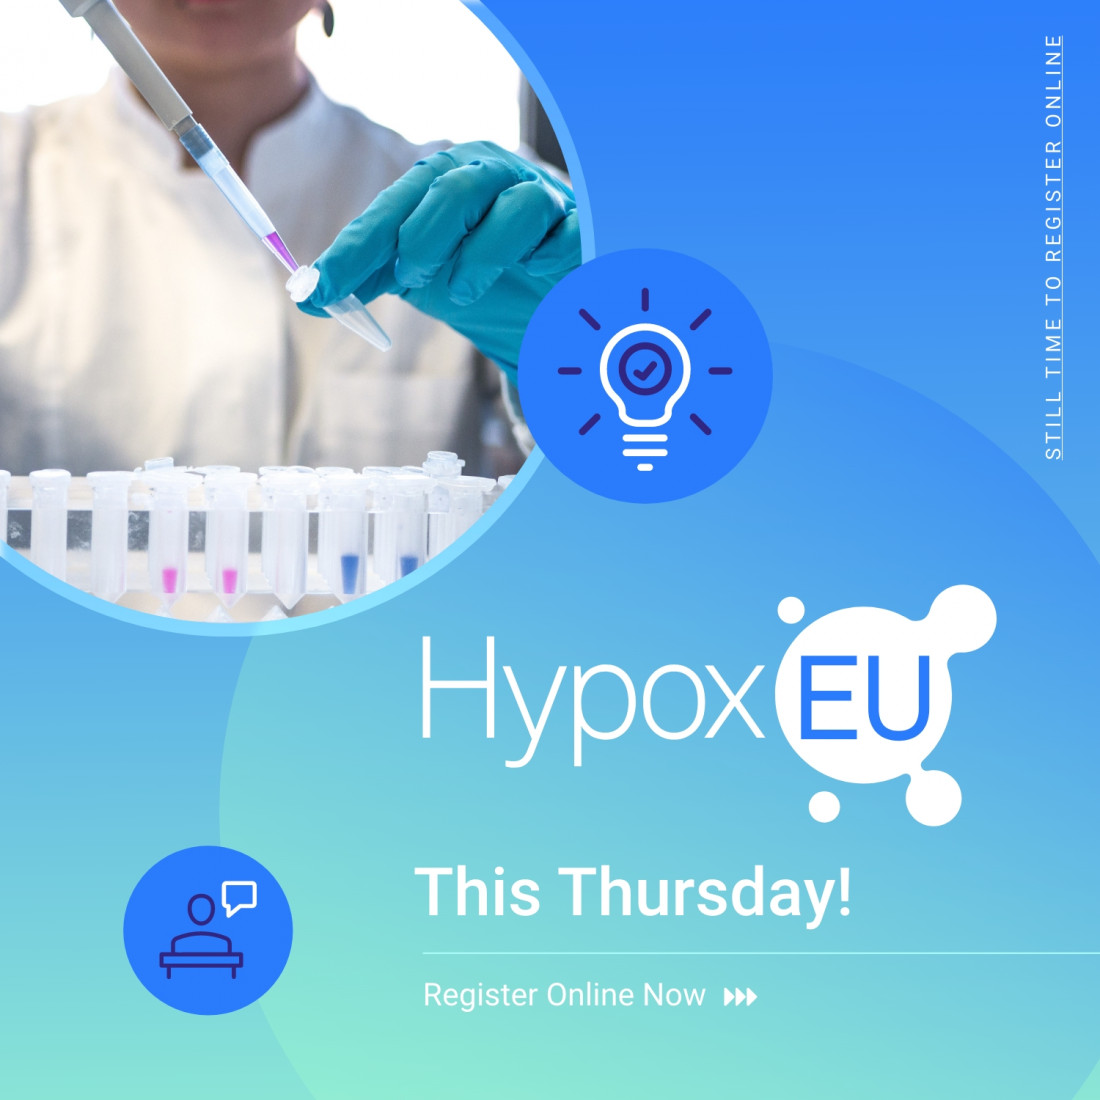 HypoxEU Starts this week!